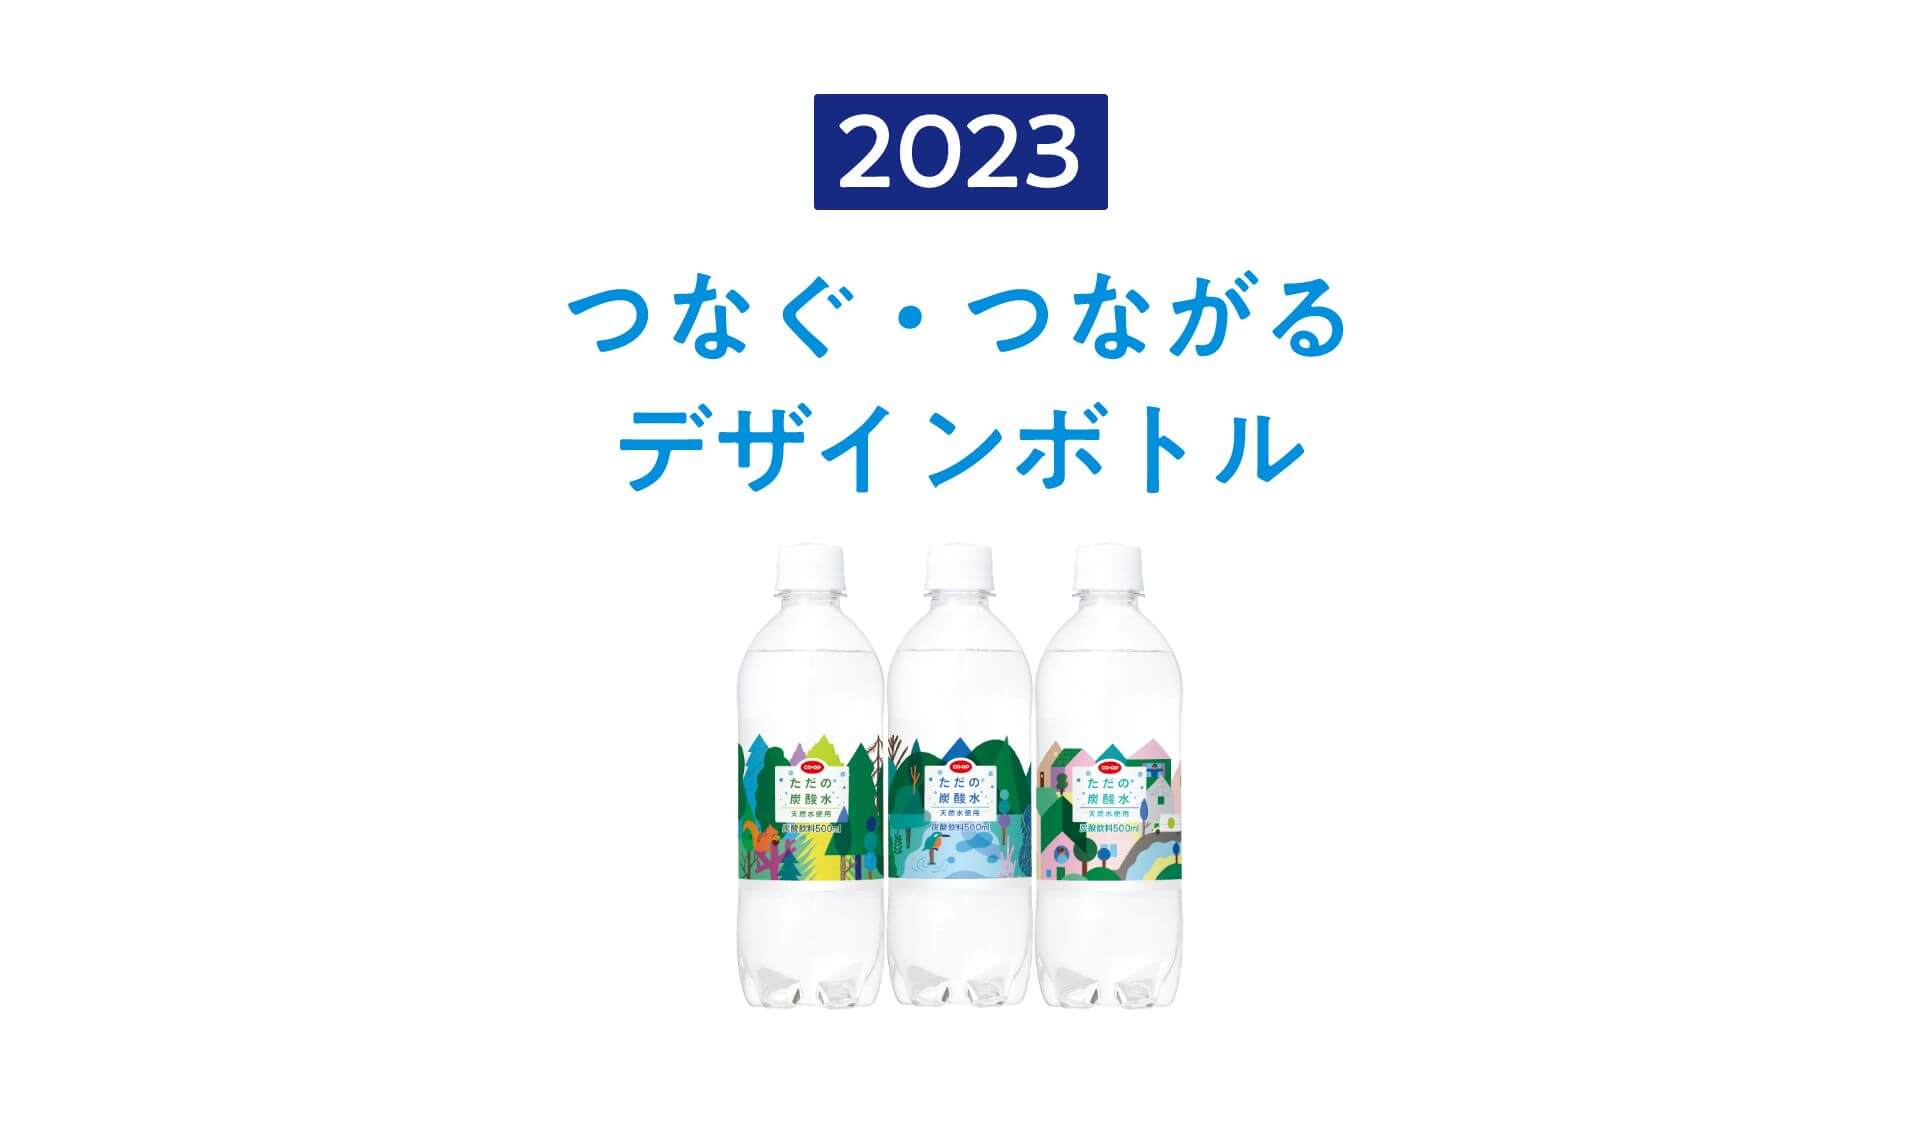 2023 つなぐ・つながるデザインボトル